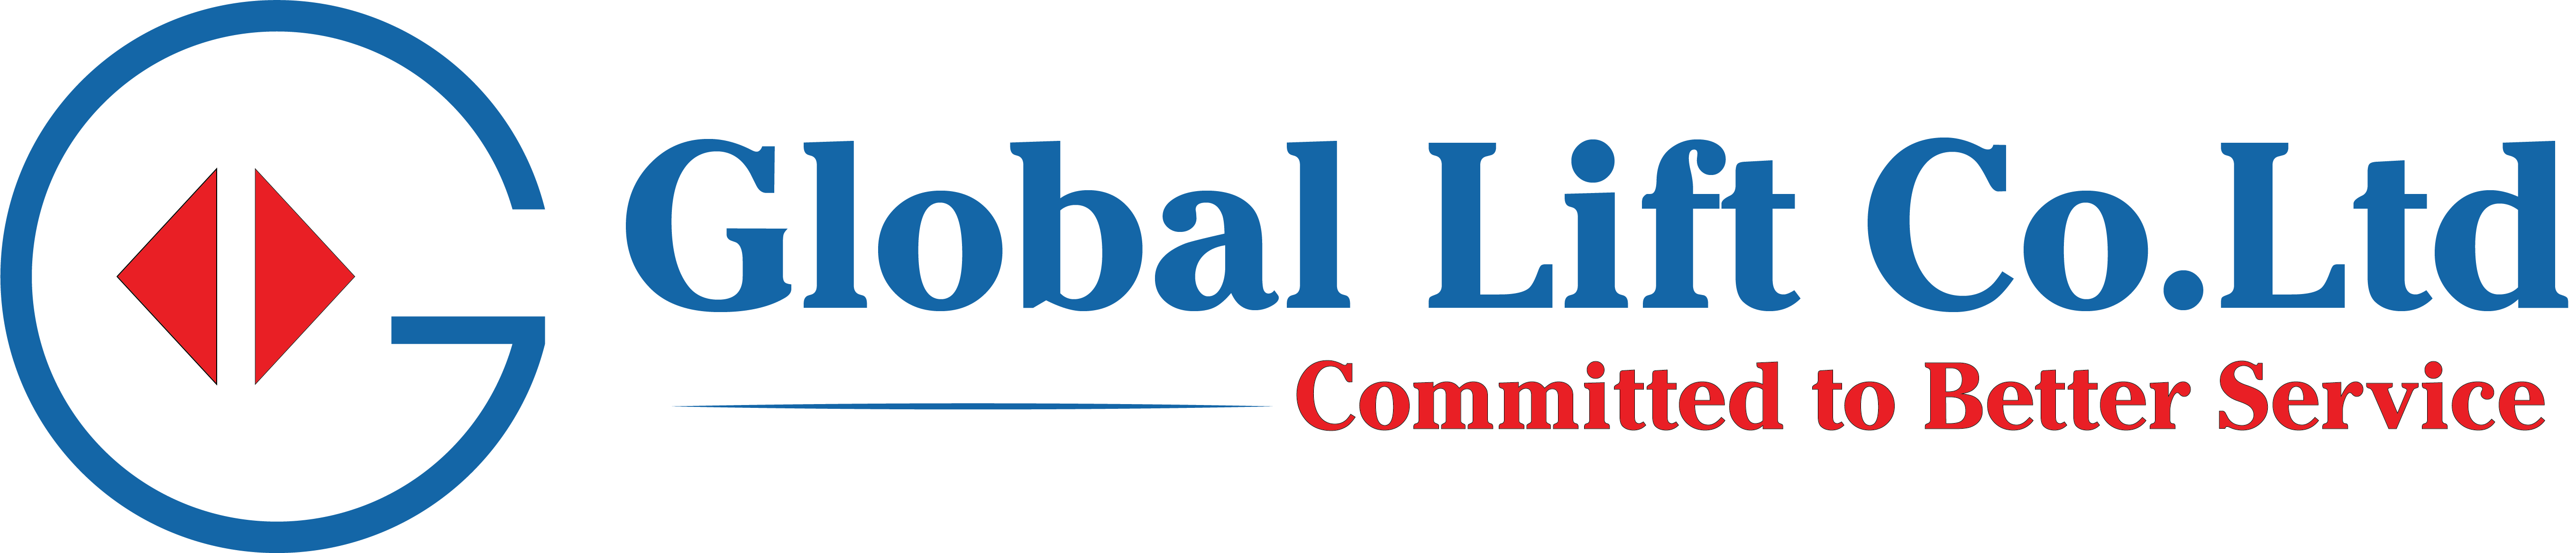 Global Lift Co.Ltd